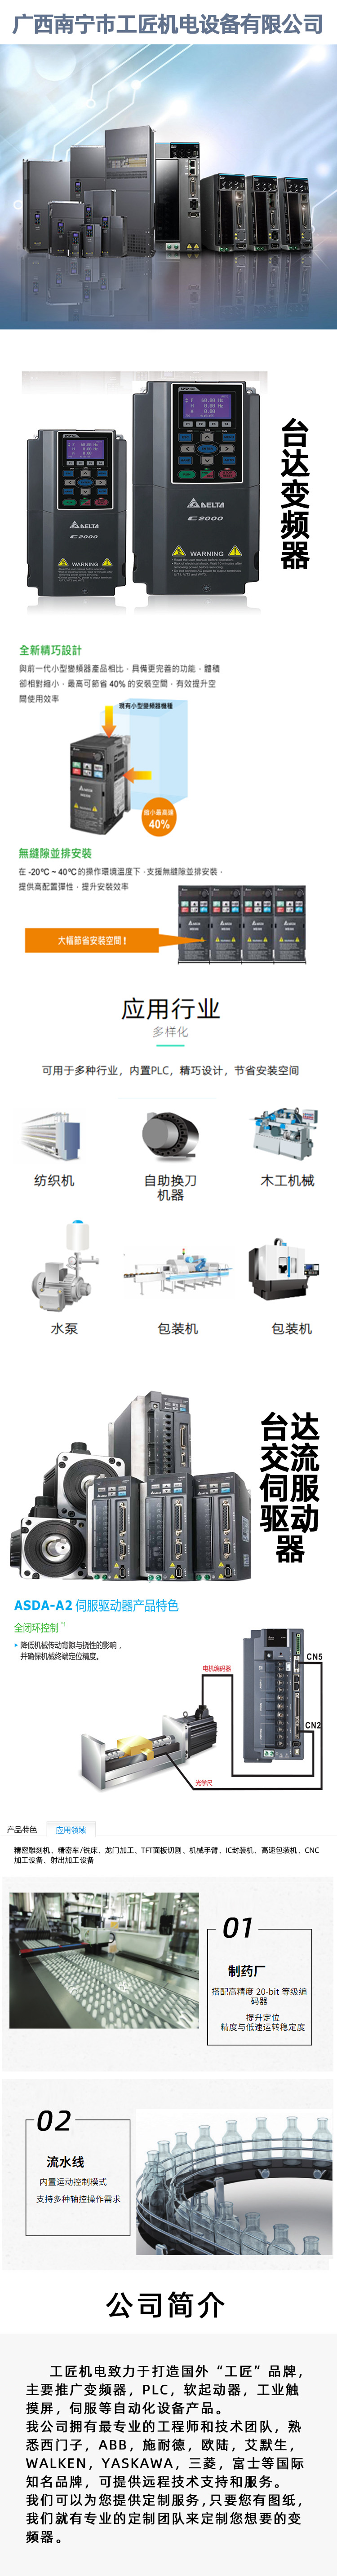 1209广西南宁市工匠机电设备有限公司(微型企业).jpg